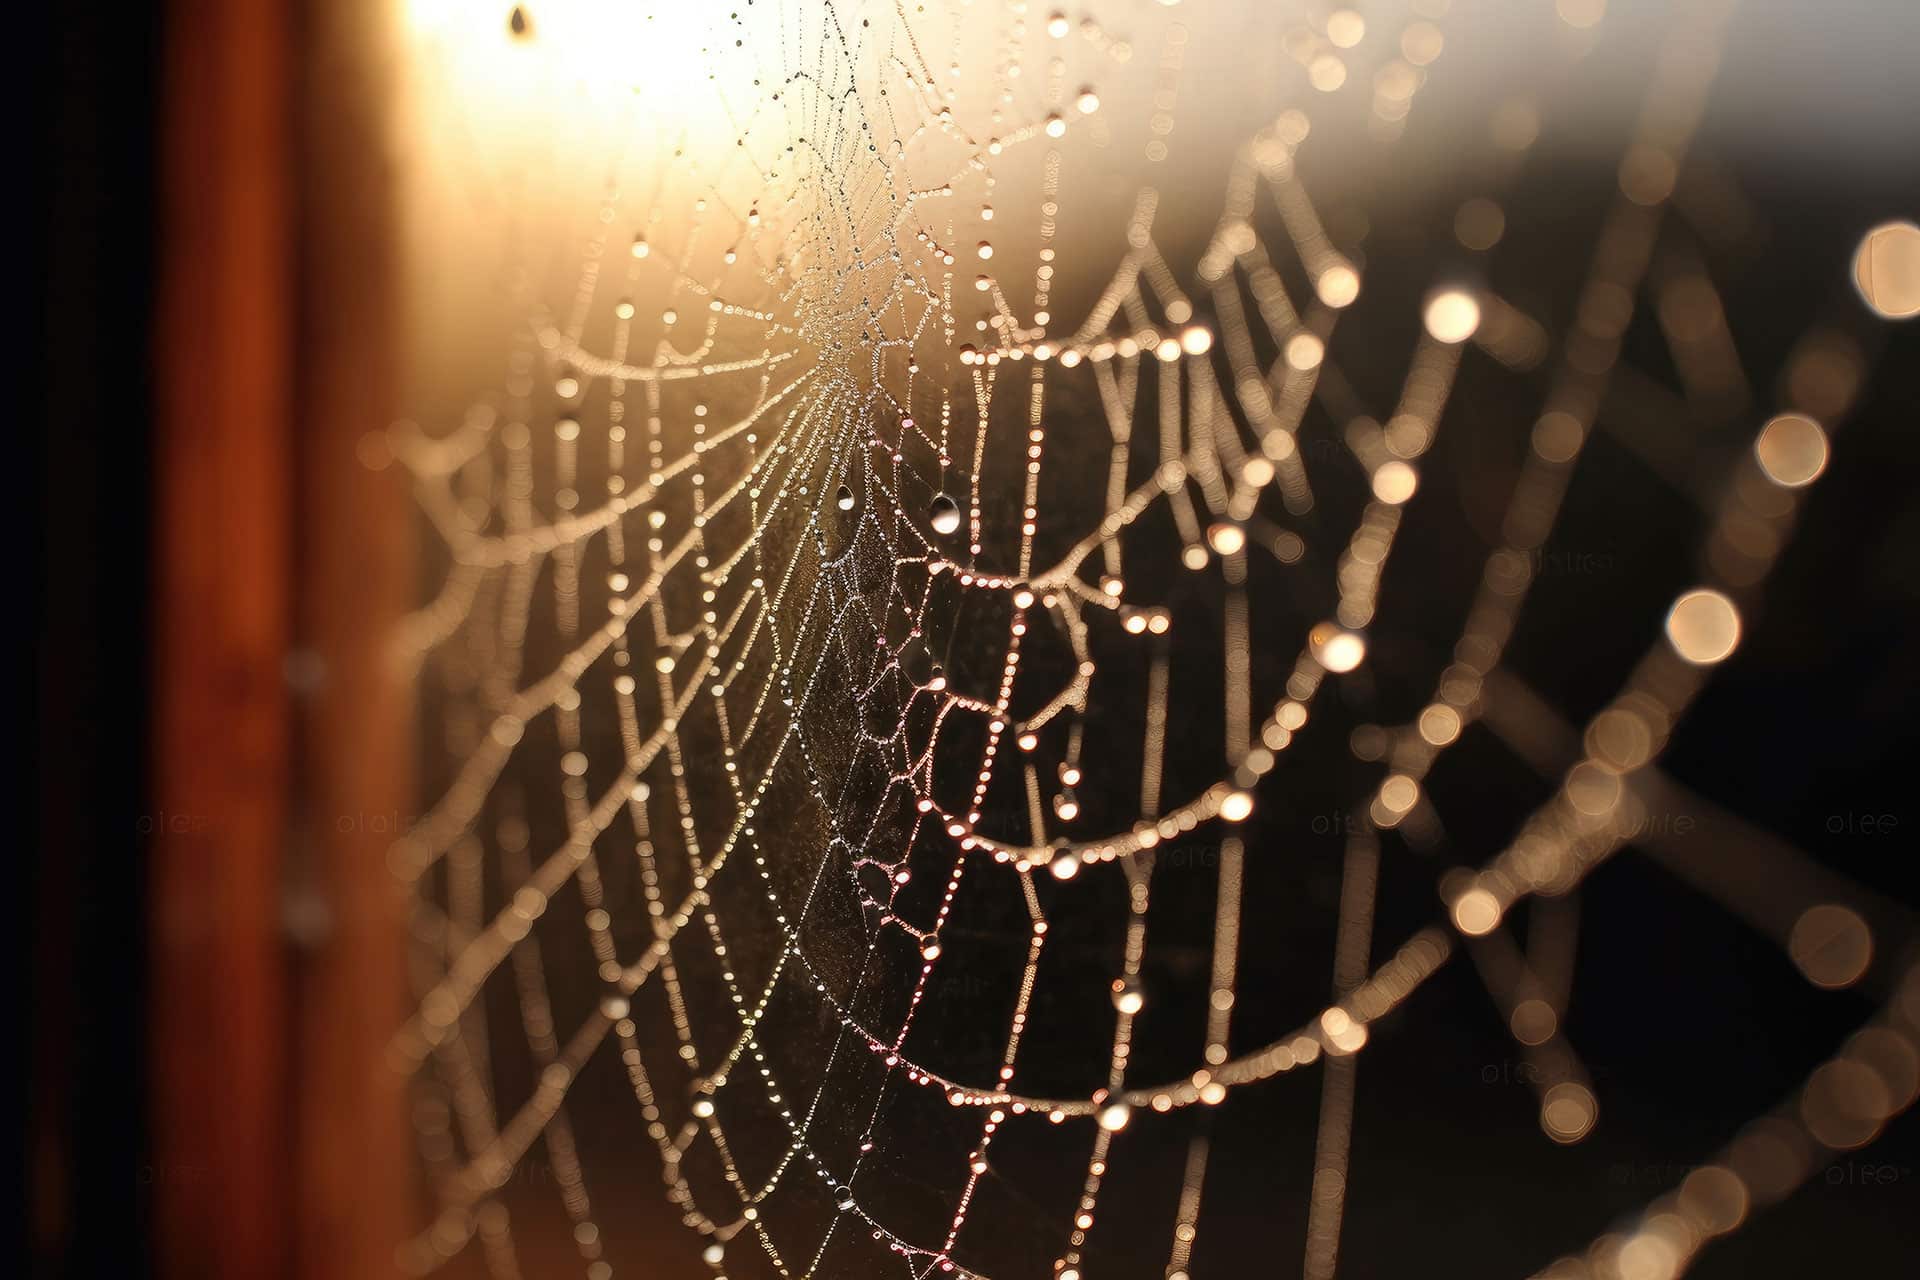 Abbildung: Spinnennetz mit Tau